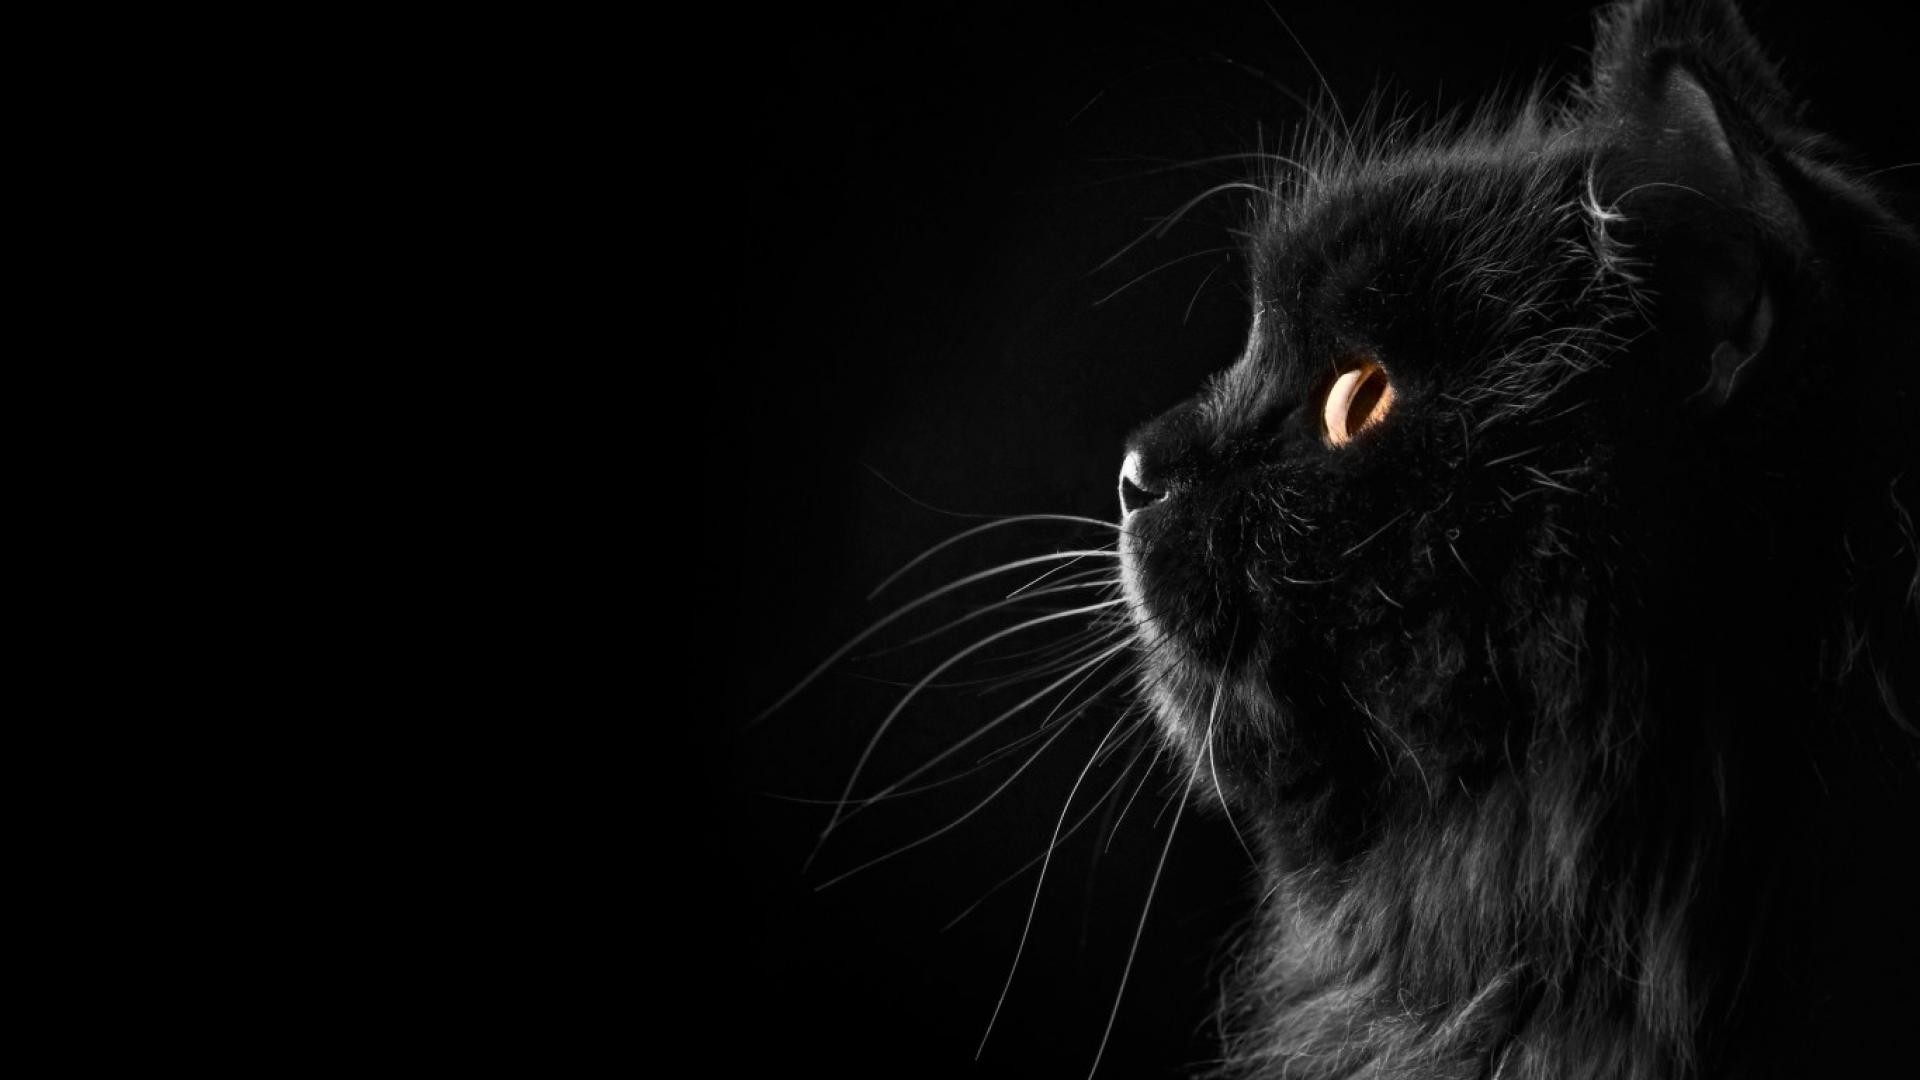 Bạn có yêu thích mèo đen không? Nếu có, đây là hình ảnh tuyệt vời dành cho bạn! Khám phá thế giới yêu thú thông qua loài mèo quyến rũ với bộ lông đen như ngựa đen cùng đôi mắt tinh nghịch.